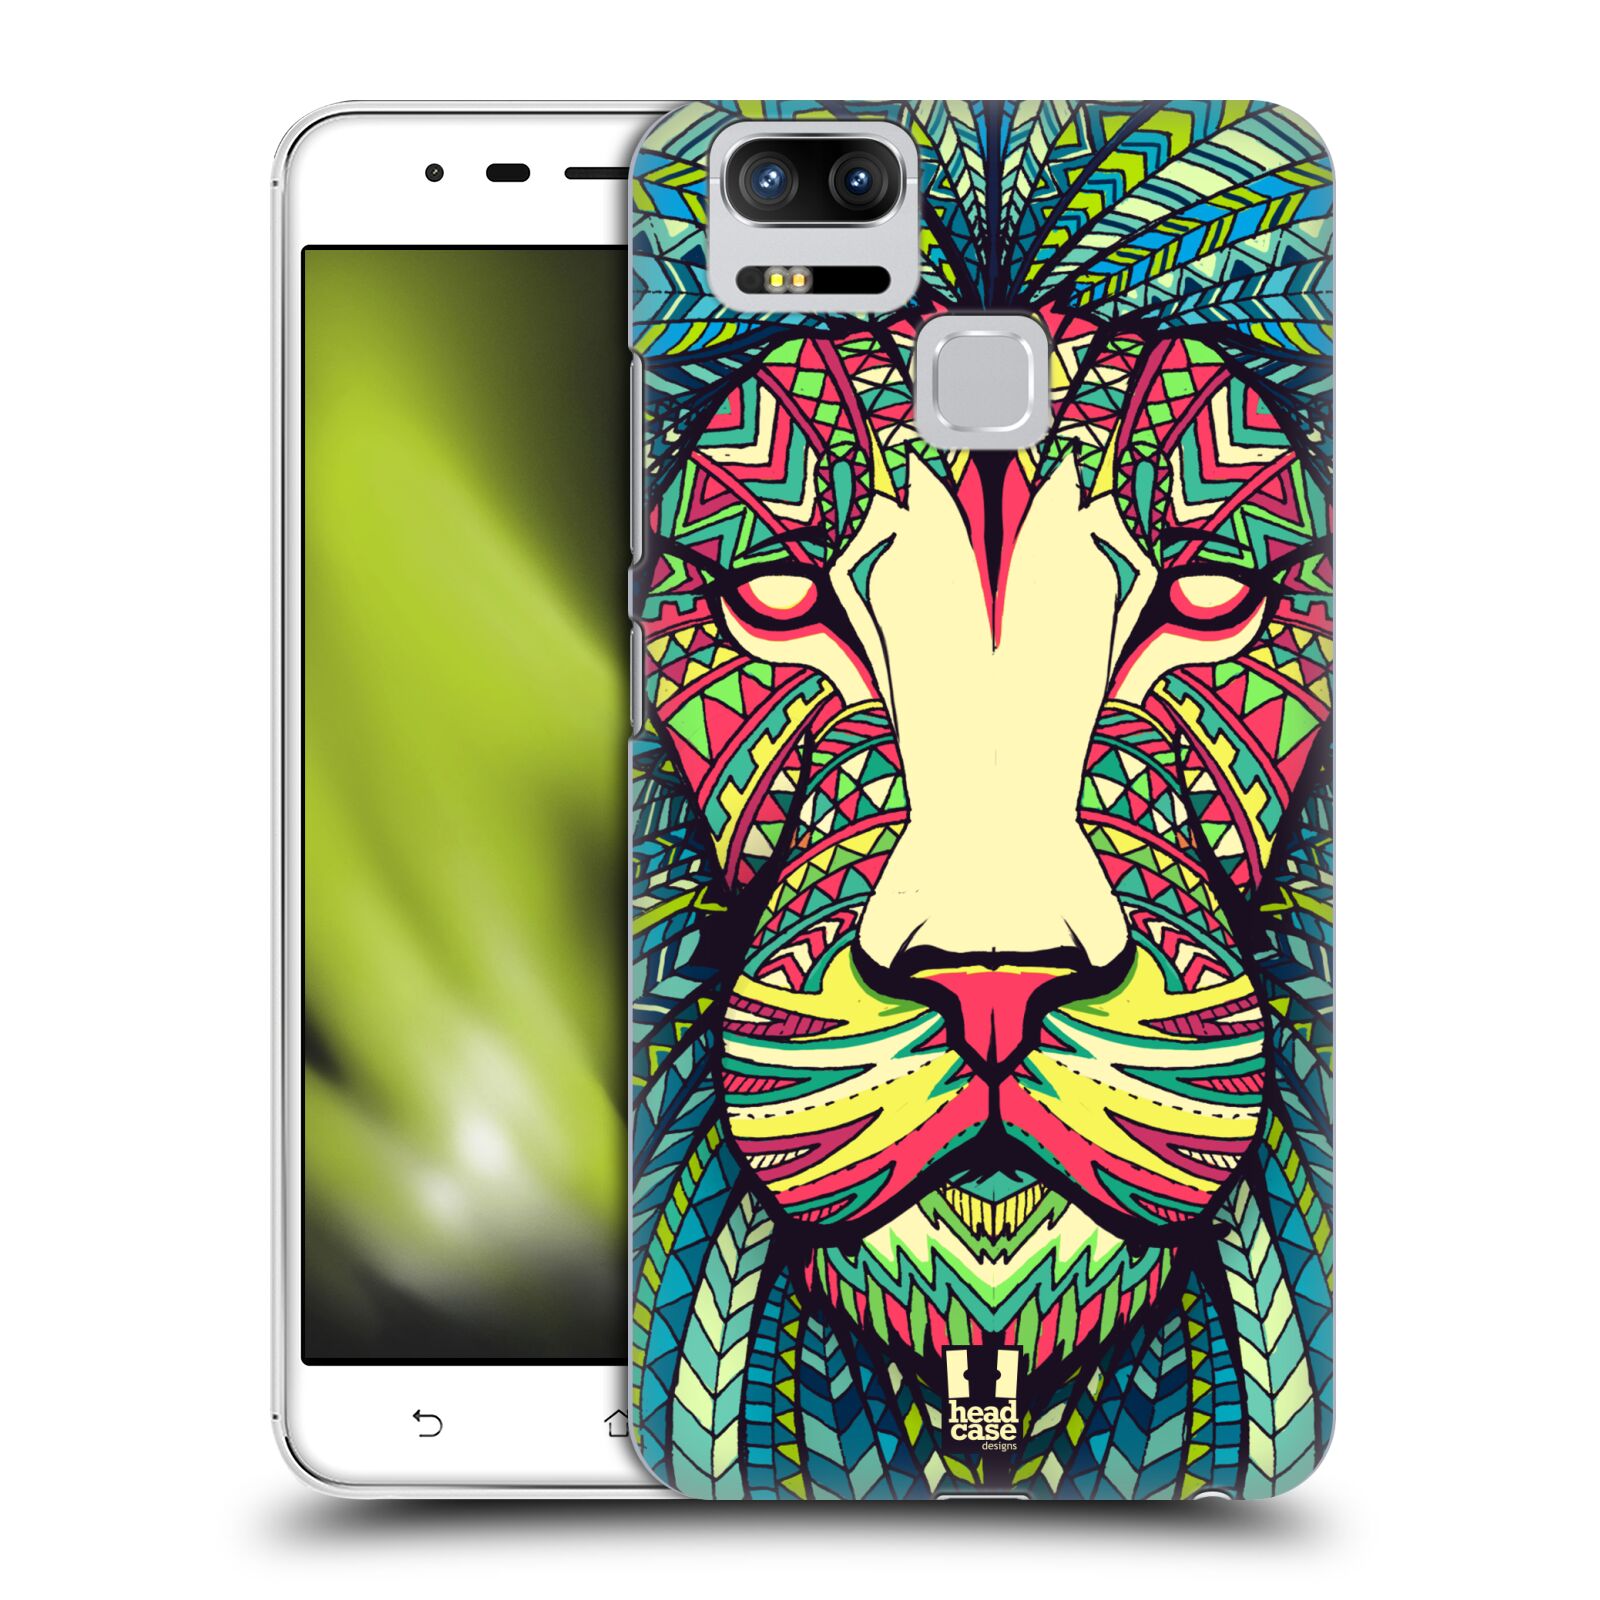 HEAD CASE plastový obal na mobil Asus Zenfone 3 Zoom ZE553KL vzor Aztécký motiv zvíře lev